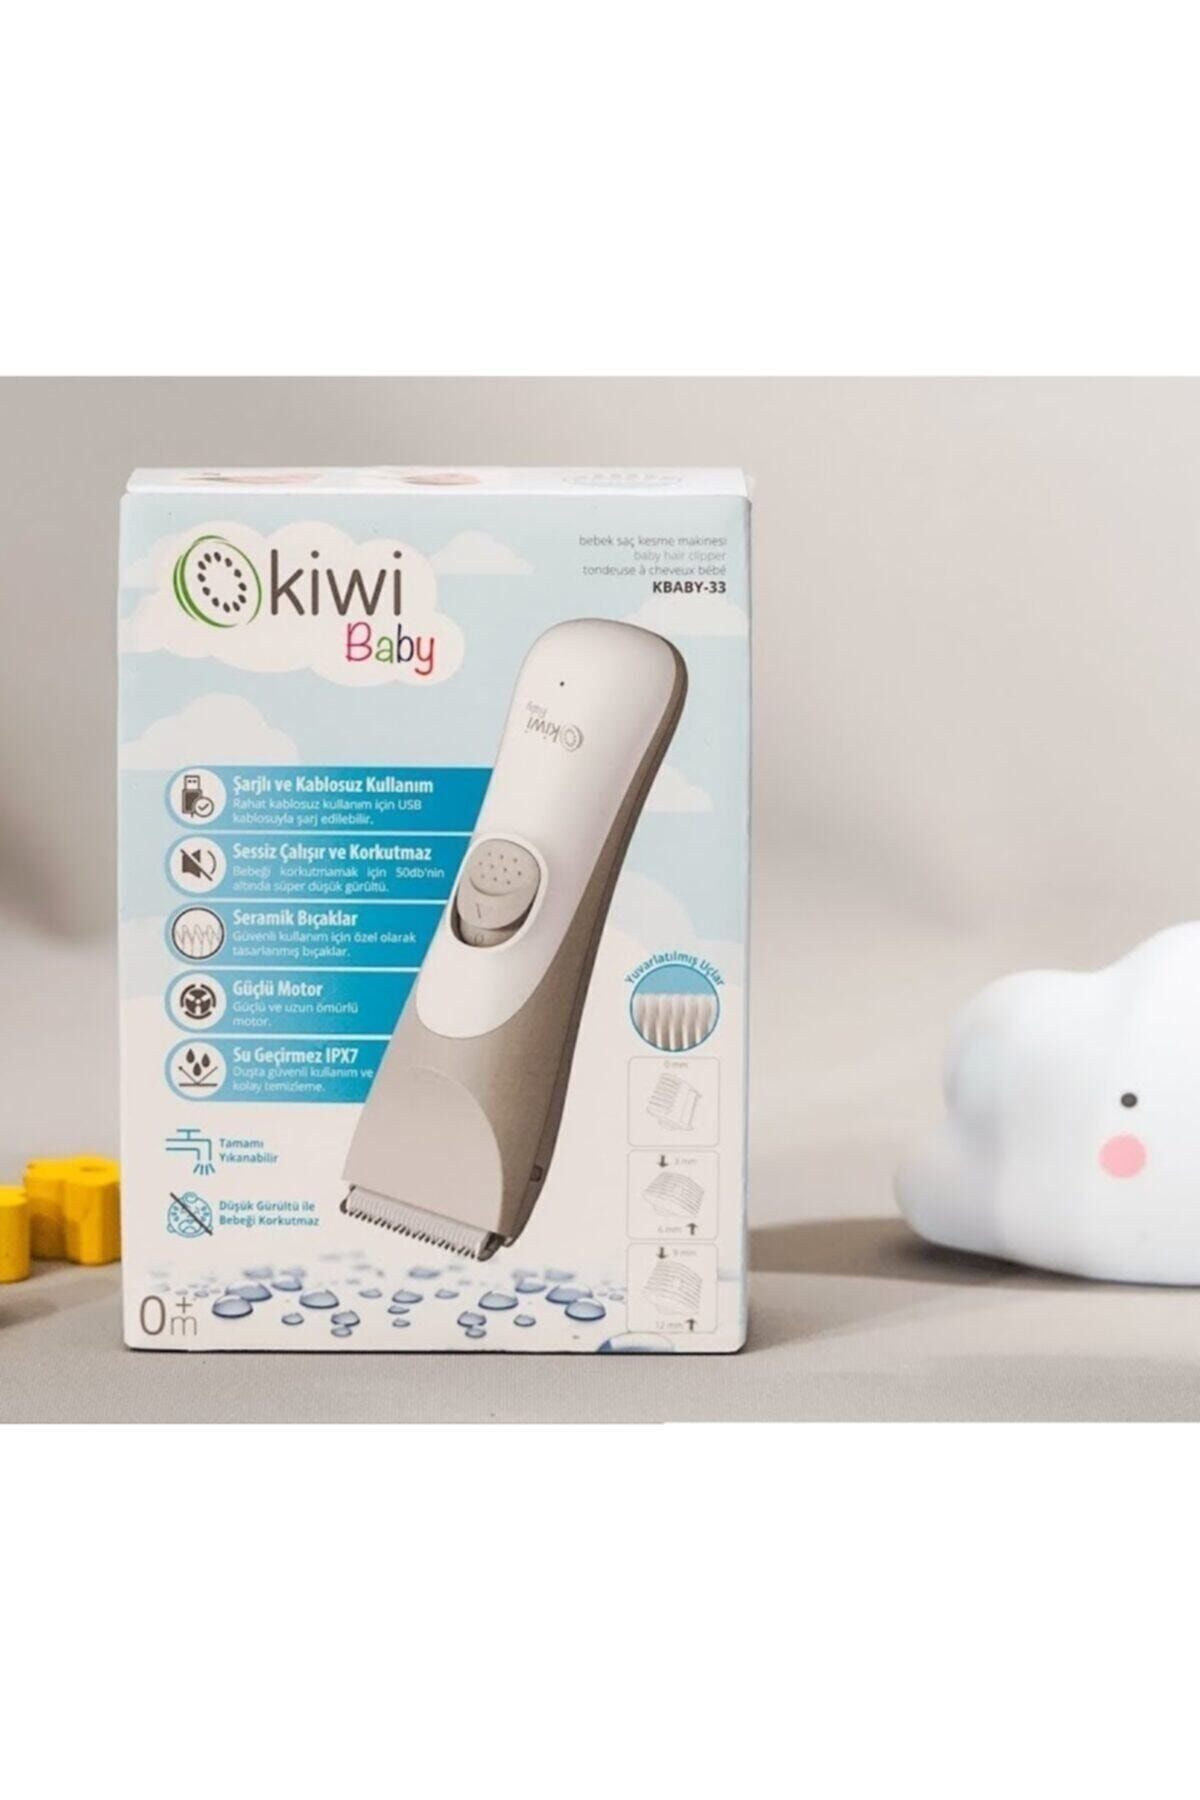 ekoekol Kiwii Baby Bebek Saç Tıraş Makinesi Kbaby-33